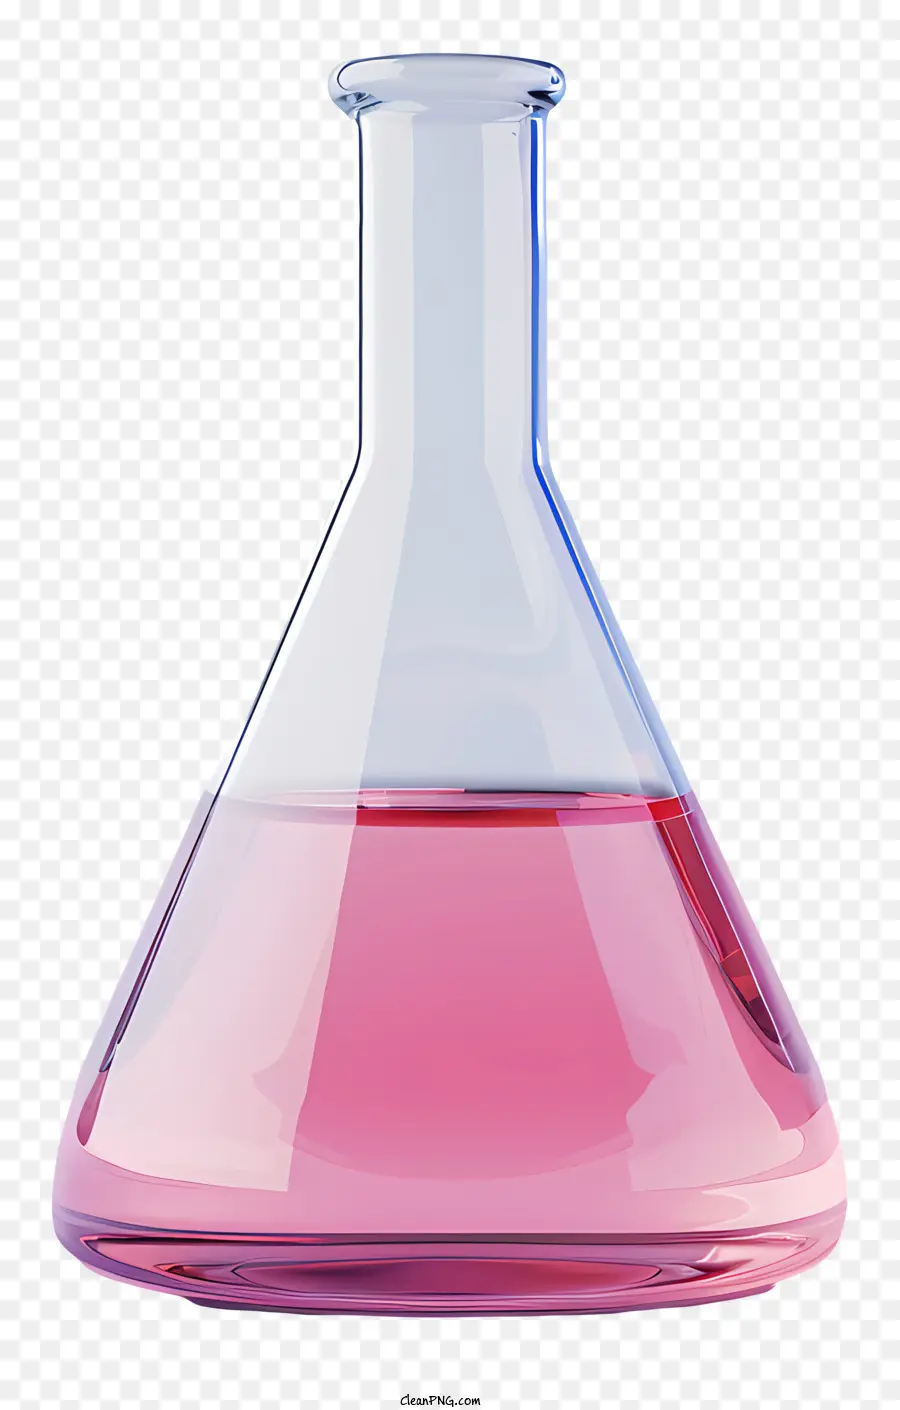 BEAKER BACCHER BACCHER BACCHIO LABORATORI PAILIO PAILIO ATTREZZATURA DI LABORATORI - Becco di vetro con liquido rosa all'interno